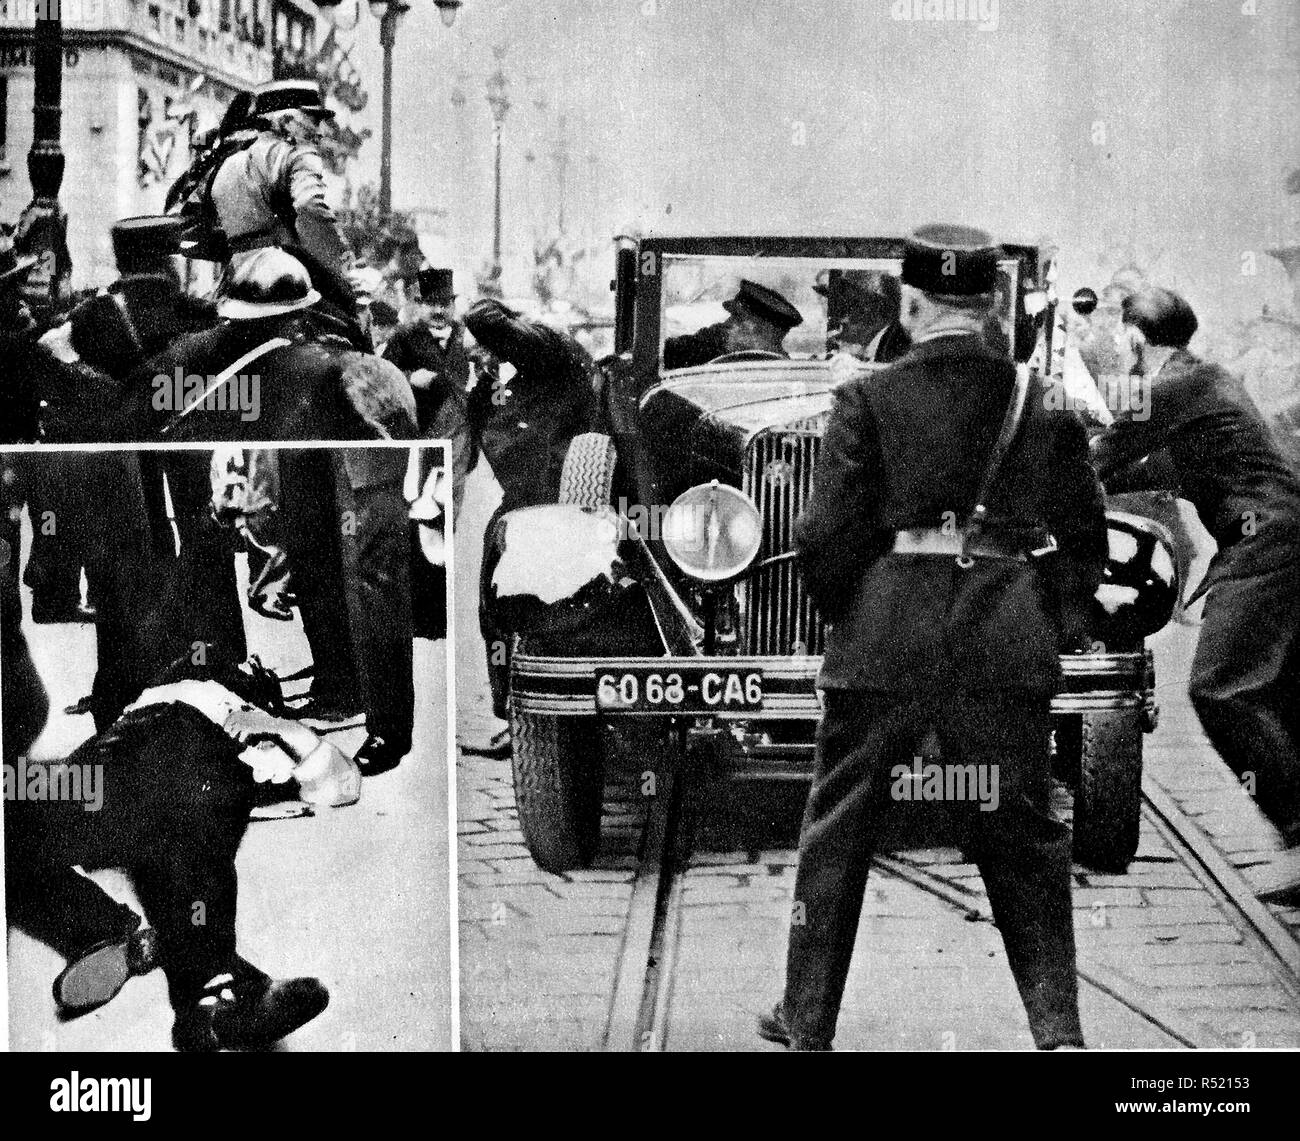 1934 - Le moment de l'assassinat à Marseille, France, du roi Alexandre de Yougoslavie (Alexander l'unificateur) & M Barthou, Ministre français (Le corps de l'Assassin, Vlado Chernozemski révolutionnaire bulgare est encadré en médaillon) Banque D'Images